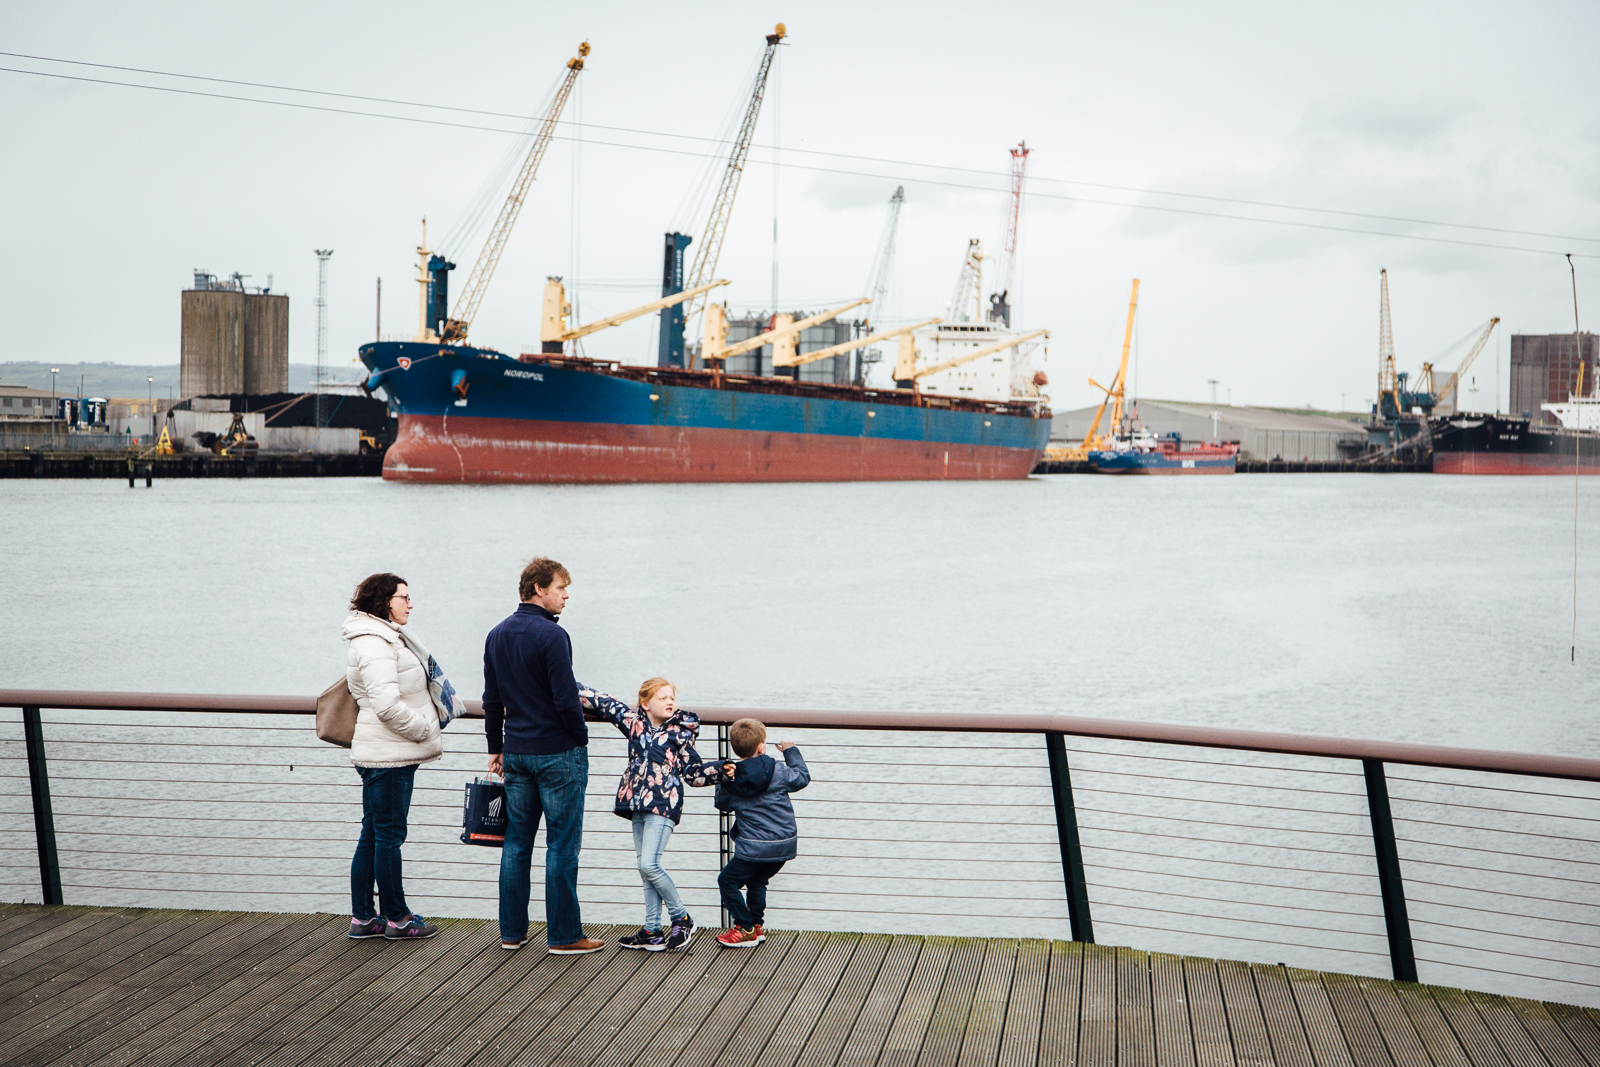 Belfast, le 24 Février 2017. Chantier naval sur lequel a été construit le Titanic. Le chantier erst aujourd'hui devenu l'une des attractions touristiques majeures de la ville.